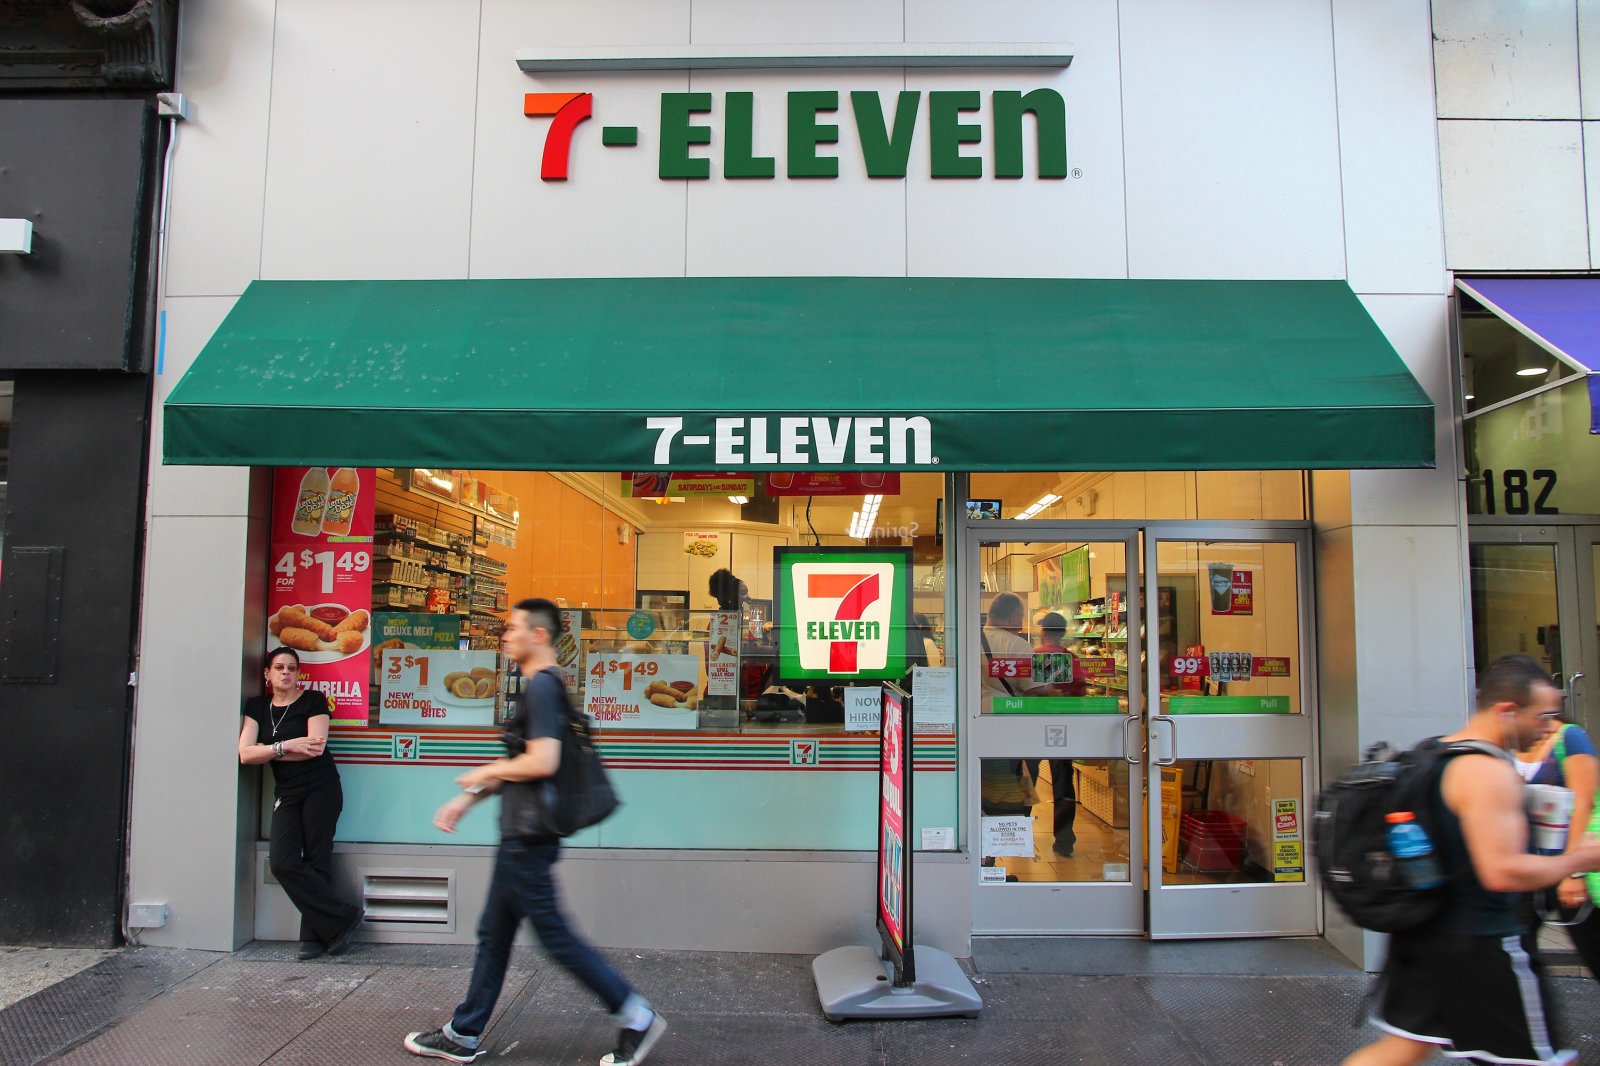 7-eleven storefront